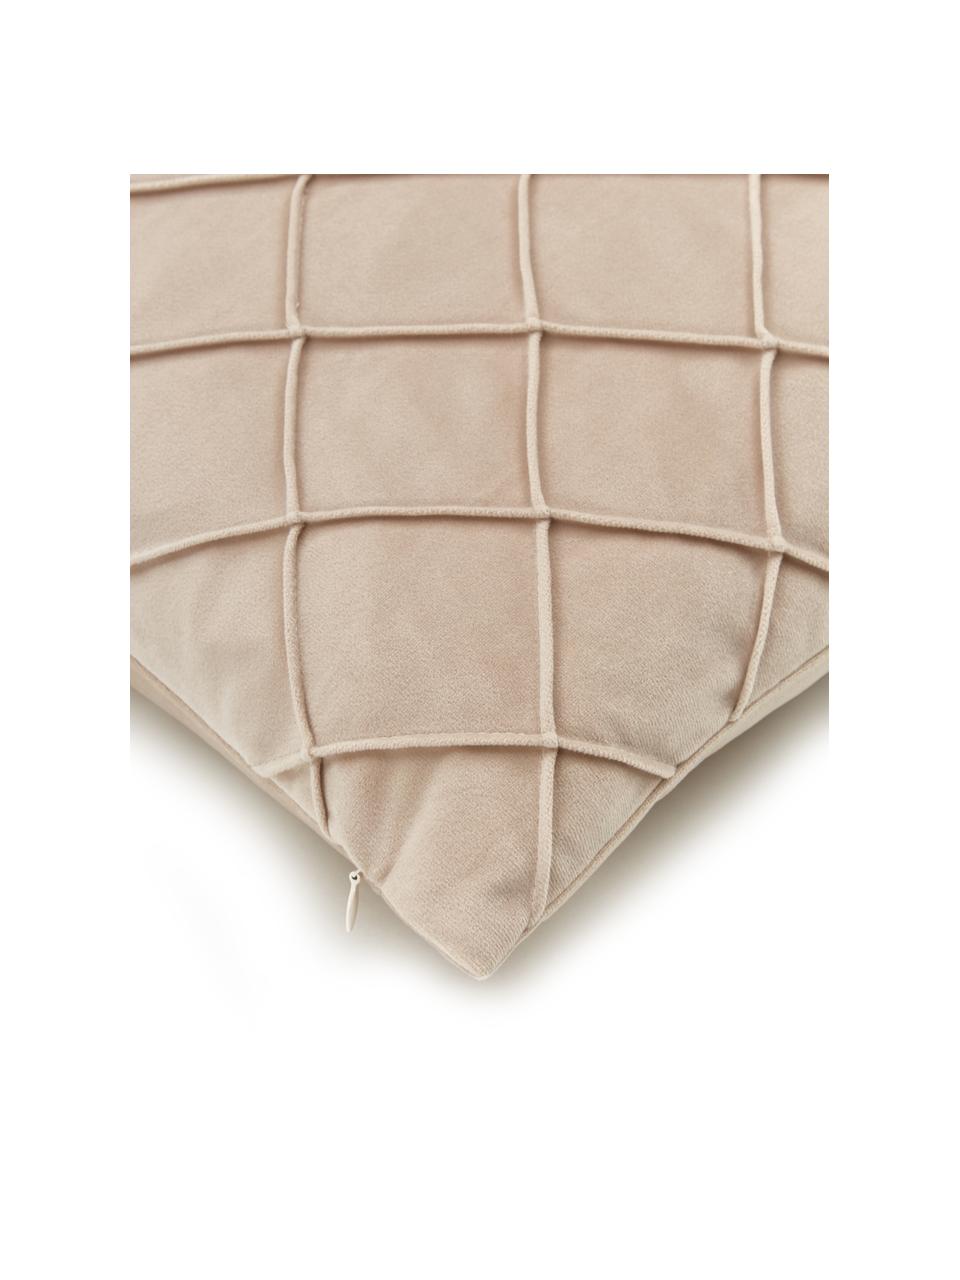 Samt-Kissenhülle Luka in Beige mit Struktur-Karomuster, Samt (100% Polyester), Beige, B 40 x L 40 cm